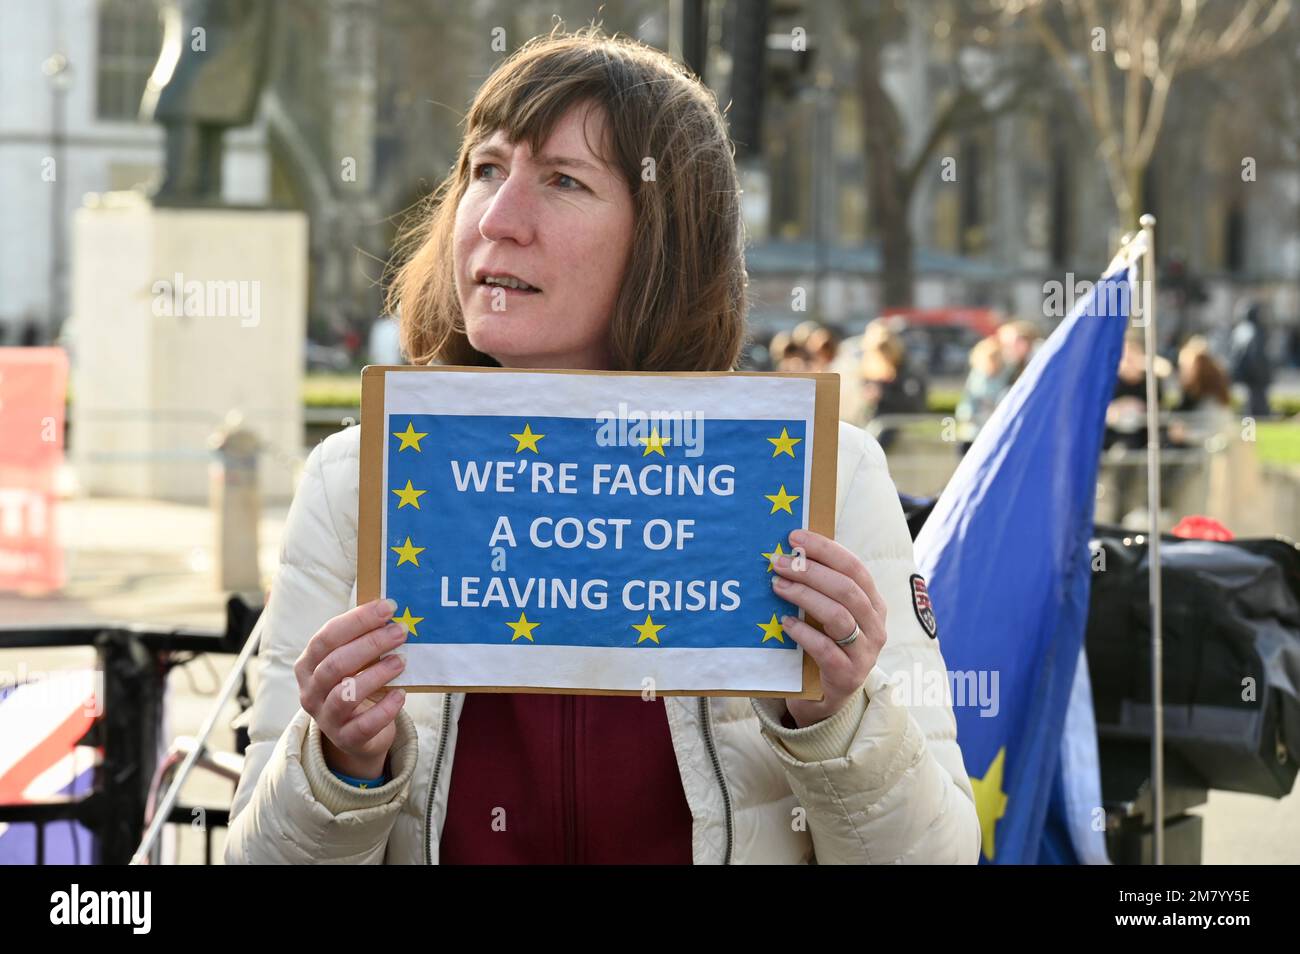 Londra, Regno Unito. Gli attivisti hanno manifestato contro il governo conservatore e il costo della Brexit. Piazza del Parlamento, Westminster. Foto Stock